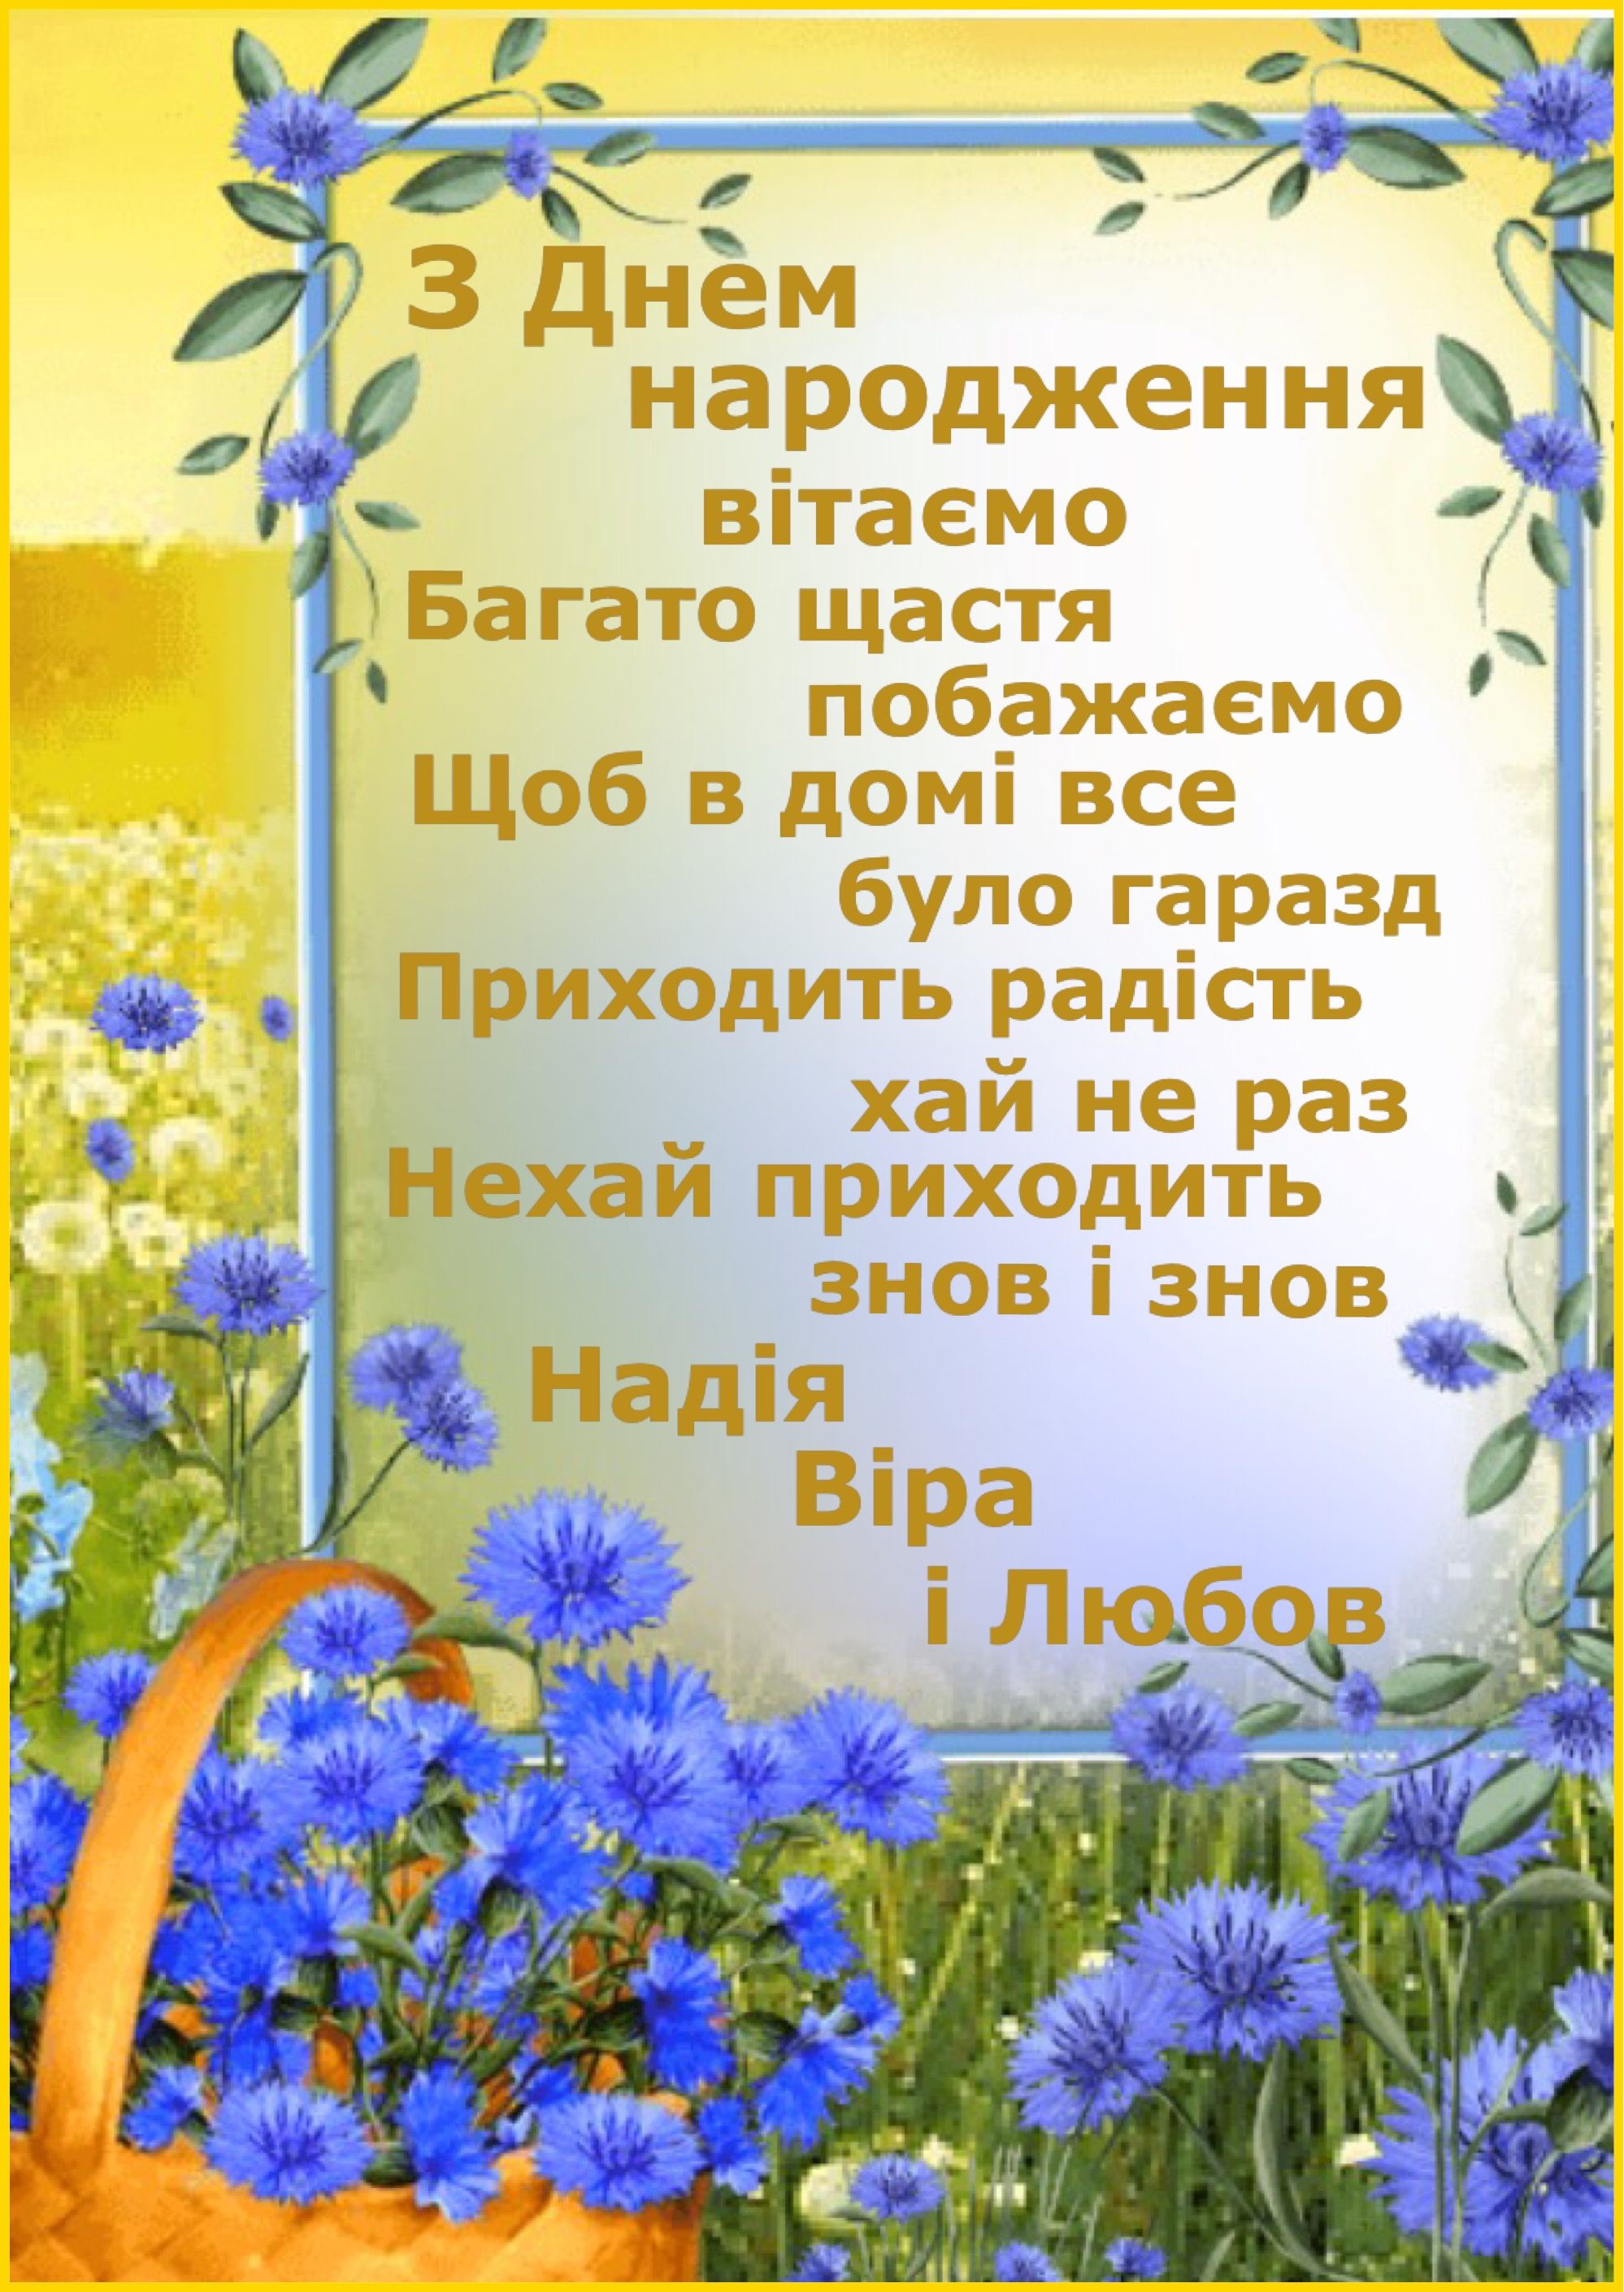 Привітання подрузі з днем народження дочки українською мовою
